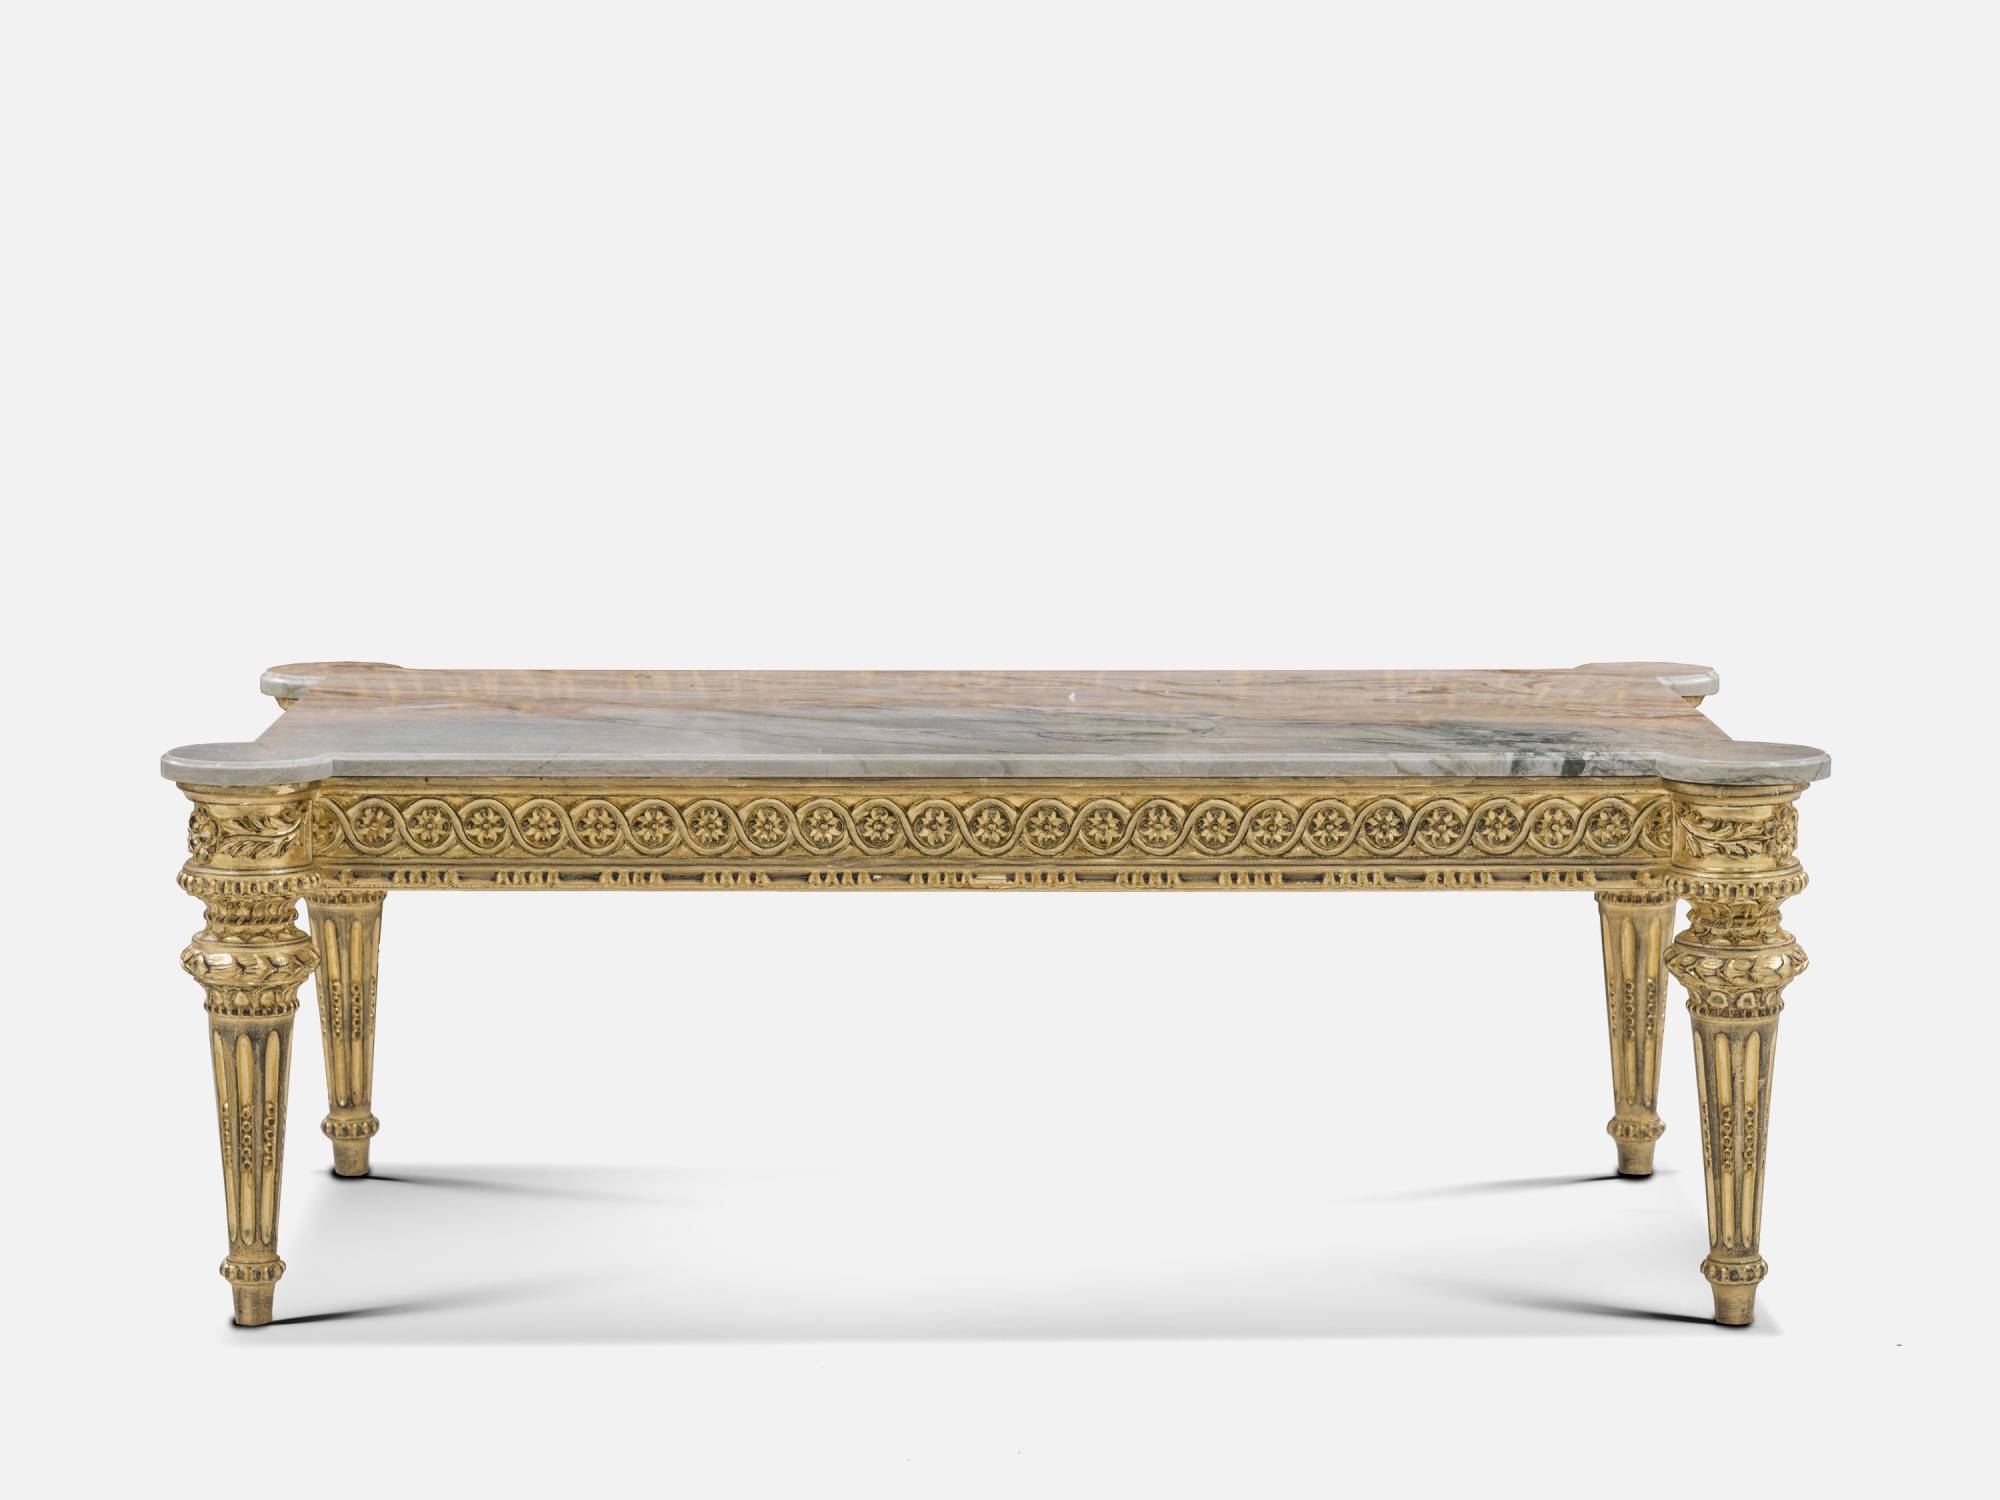 ART. 2235 – C.G. Capelletti Italian Luxury Classic Small tables. Made in Italy classic interior design